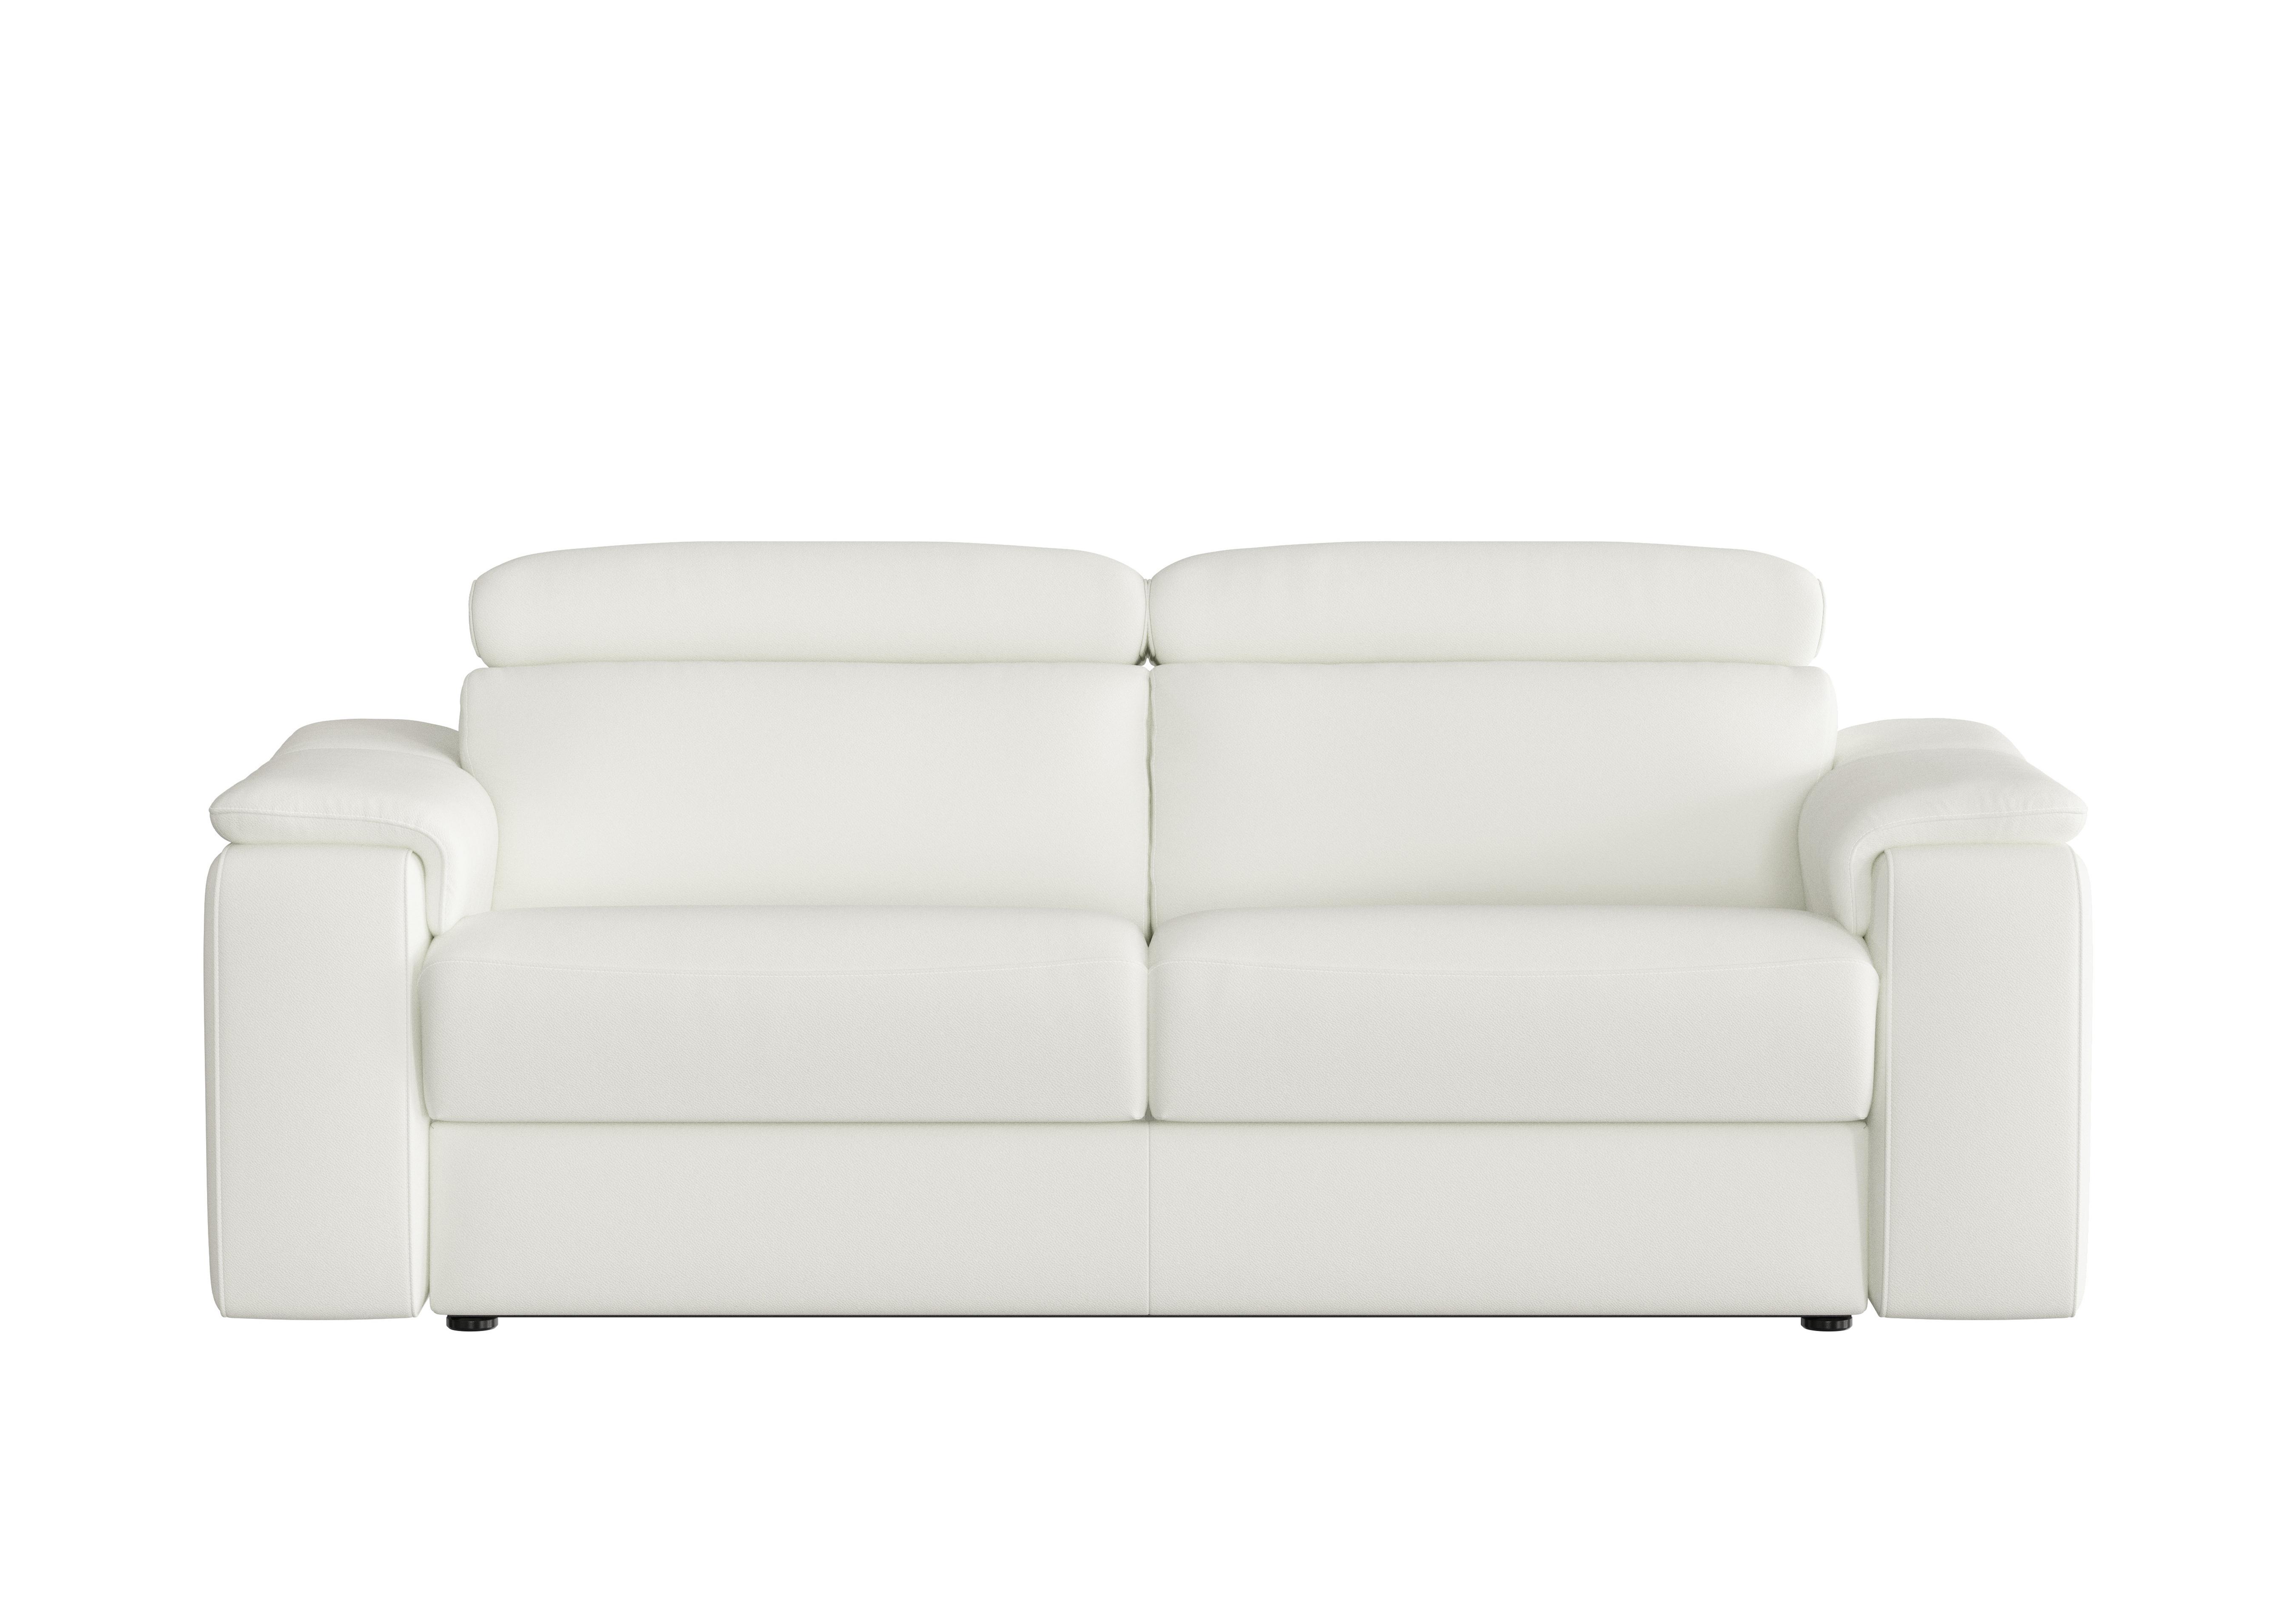 Davide 3 Seater Leather Sofa in 370 Torello Bianco Puro on Furniture Village